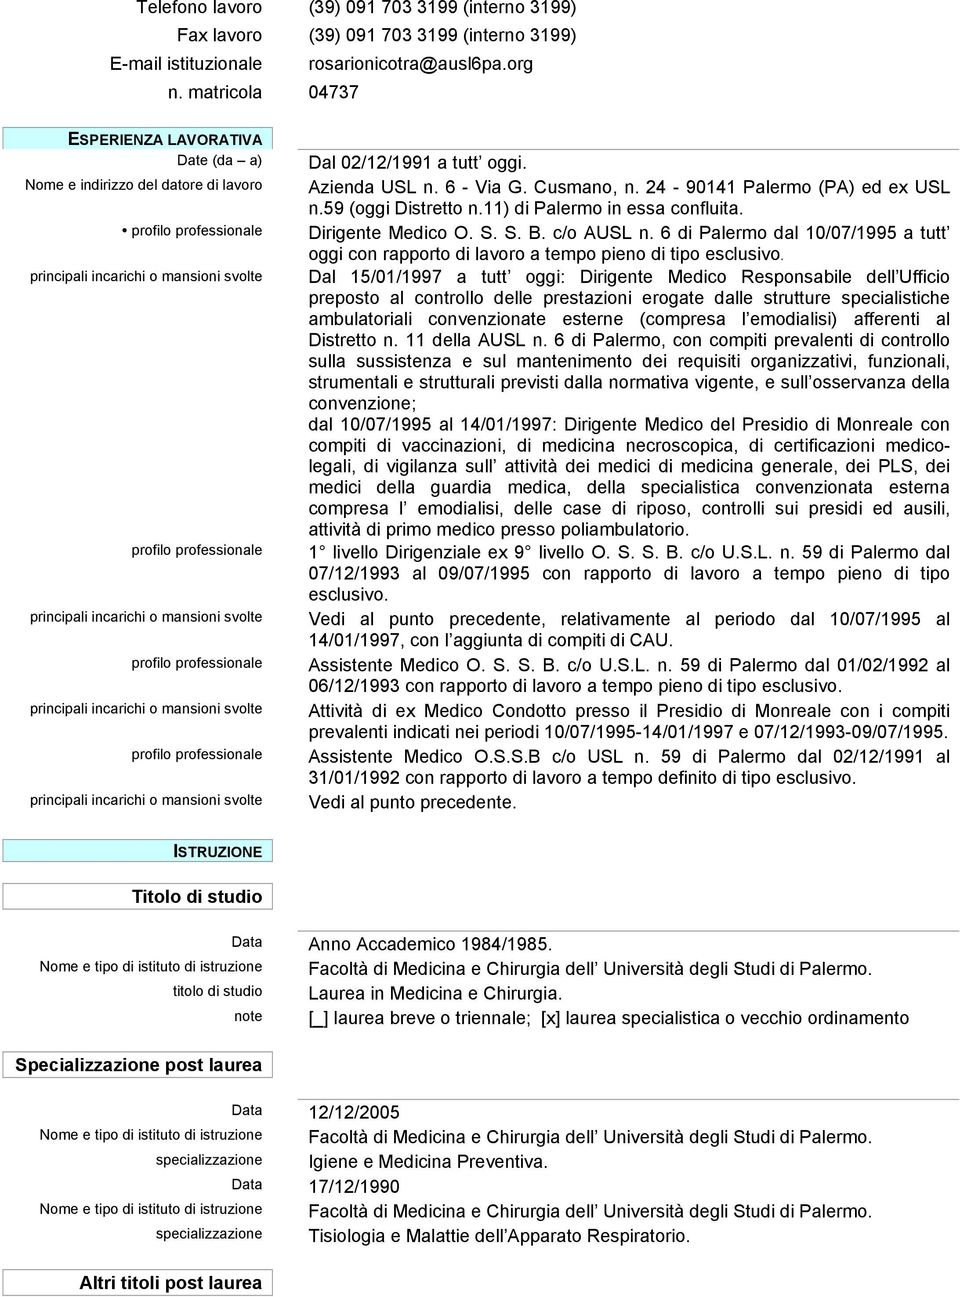 59 (oggi Distretto n.11) di Palermo in essa confluita. Dirigente Medico O. S. S. B. c/o AUSL n. 6 di Palermo dal 10/07/1995 a tutt oggi con rapporto di lavoro a tempo pieno di tipo esclusivo.